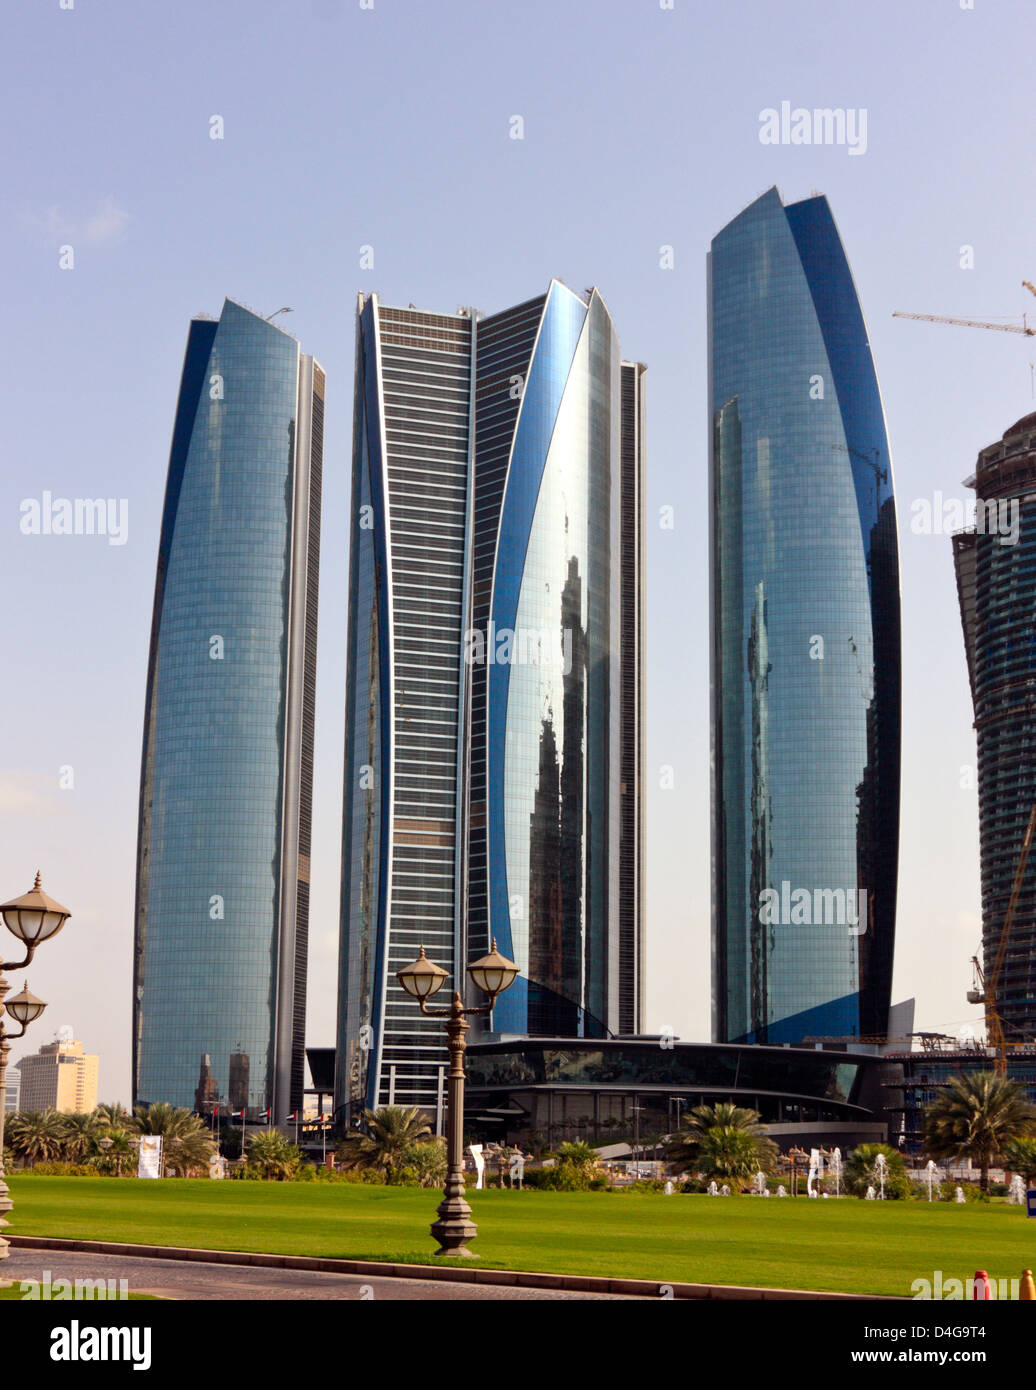 The Etihad Towers, Abu Dhabi, United Arab Emirates Stock Photo